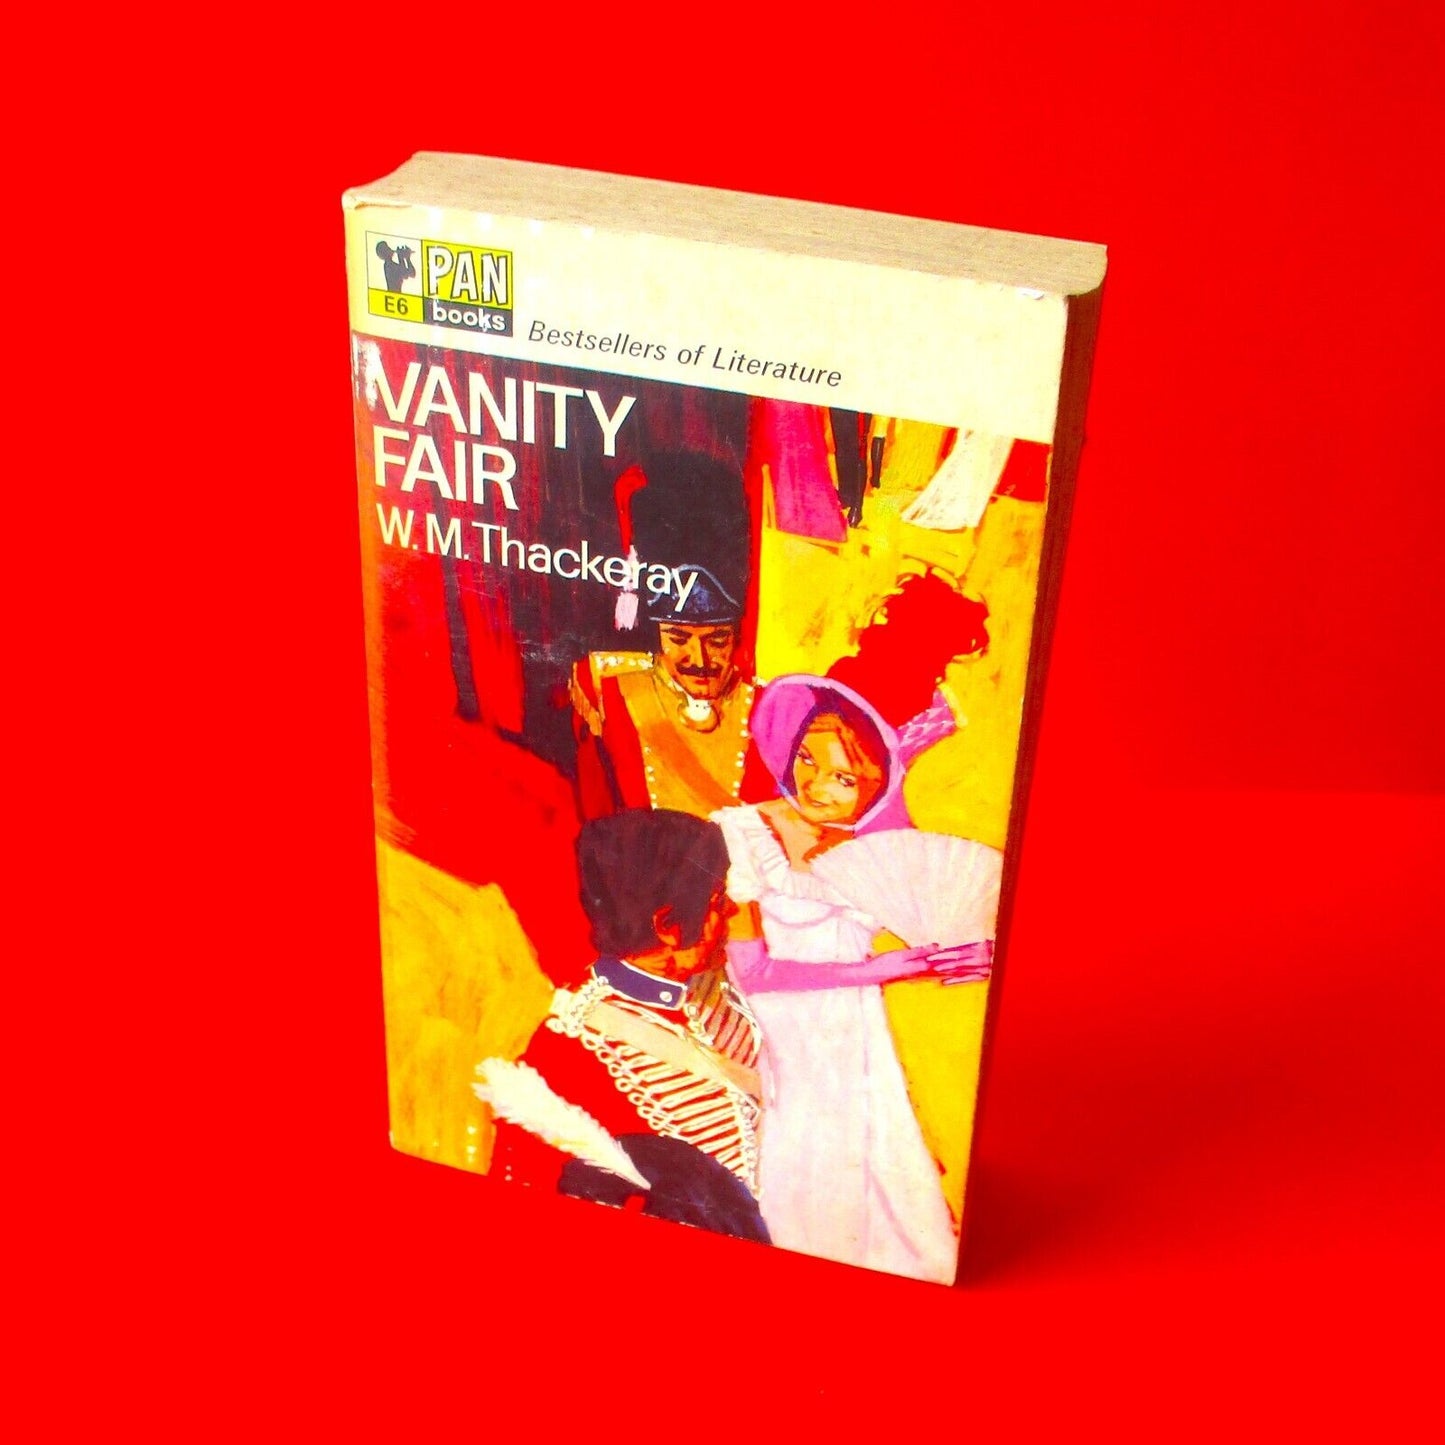 Vanity Fair by William Thackery Vintage Pan Paperback